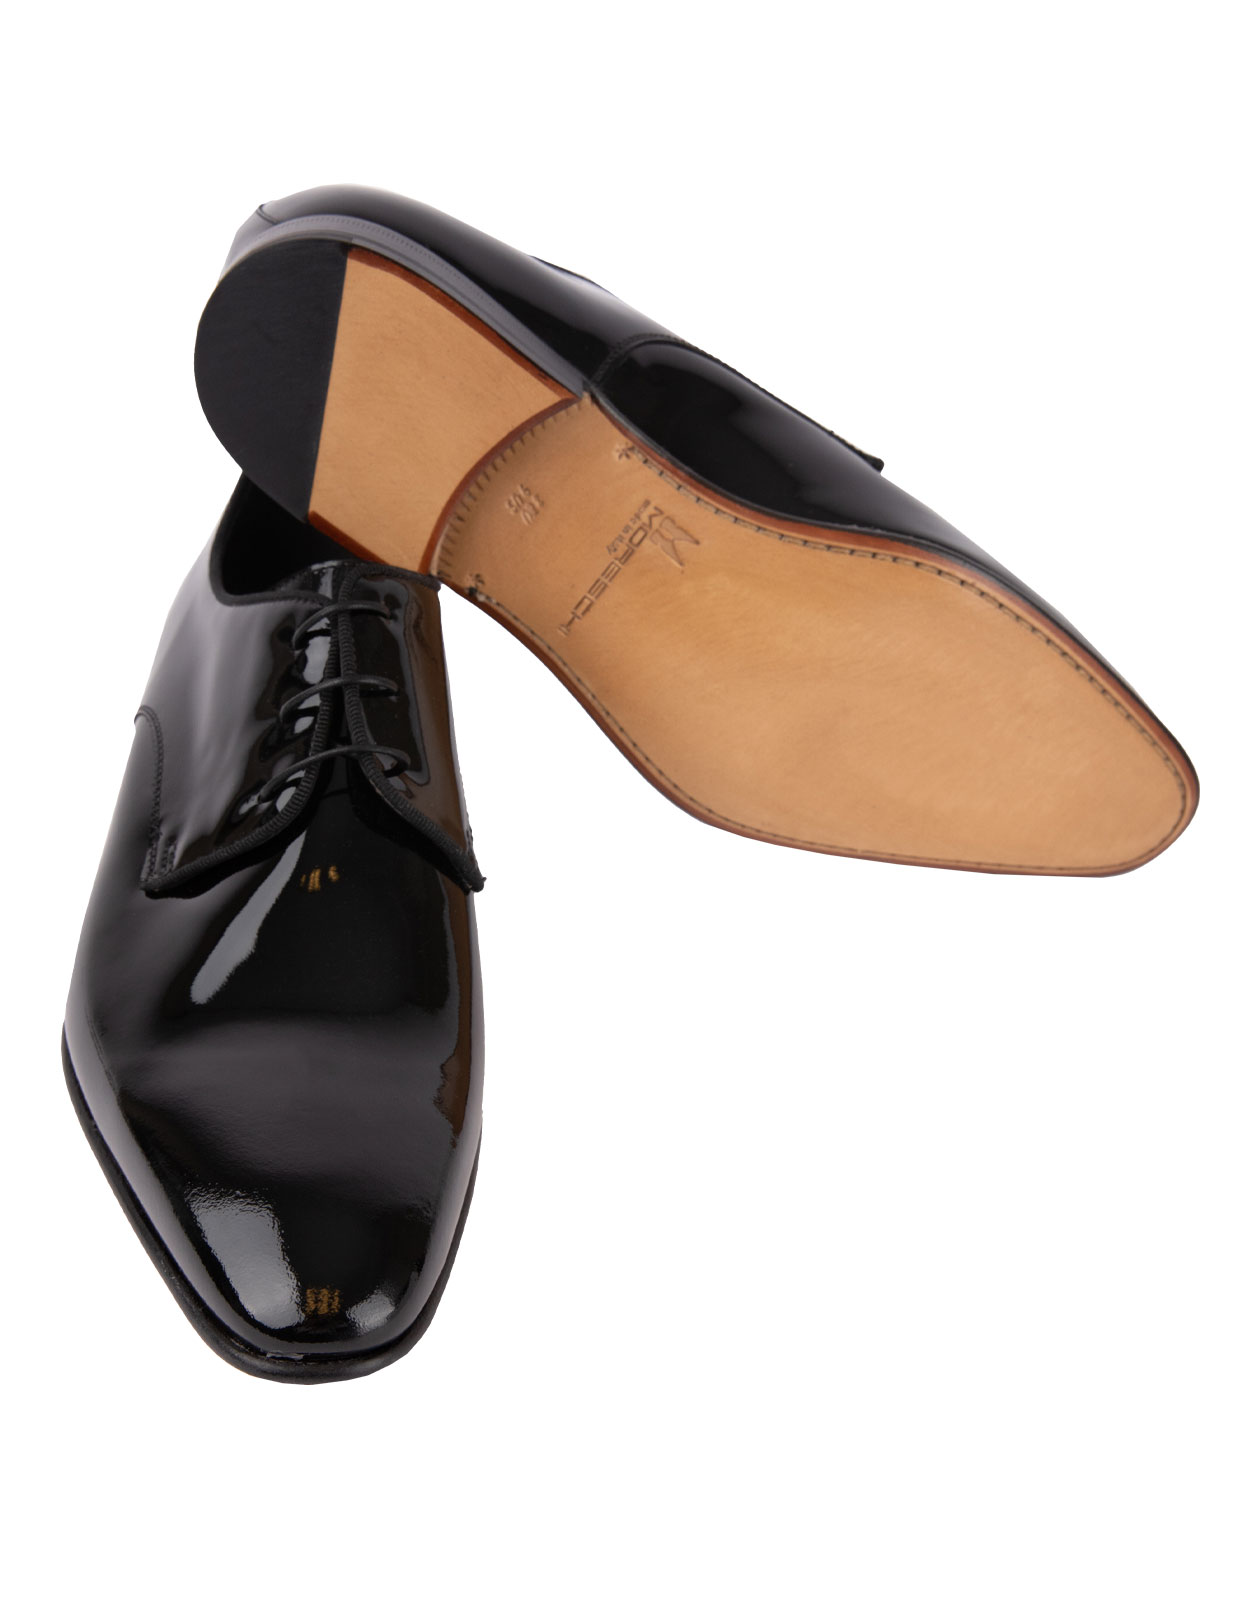 Linz Patent Leather Derby Shoes Black Stl 7.5